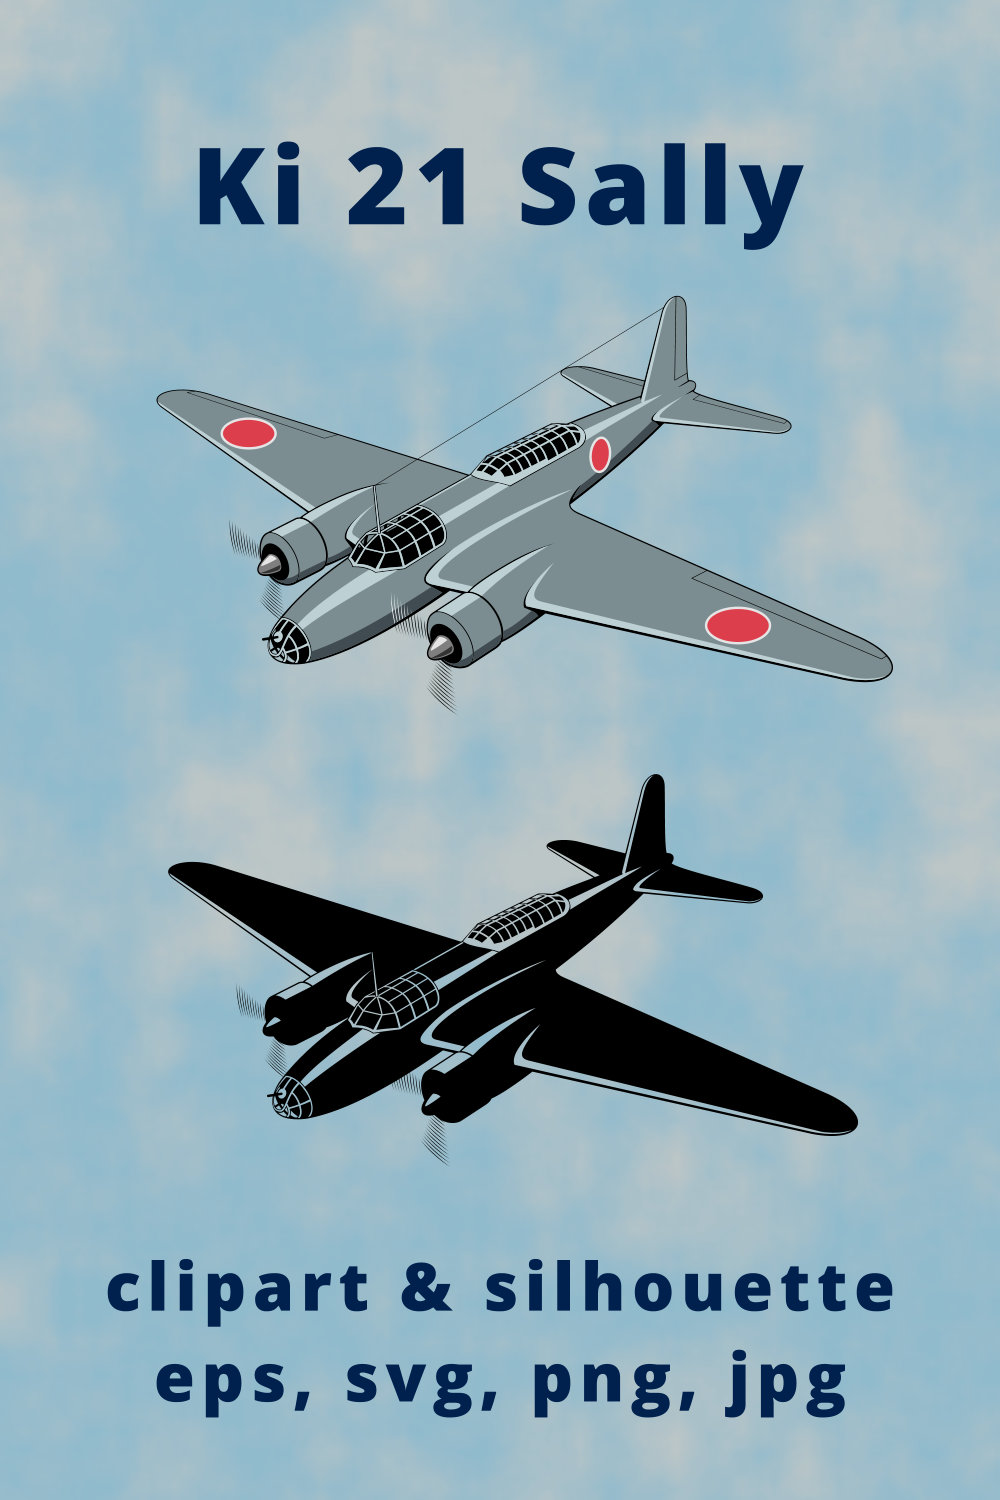 Ki-21 Sally Japanese Bomber Plane Clipart pinterest preview image.